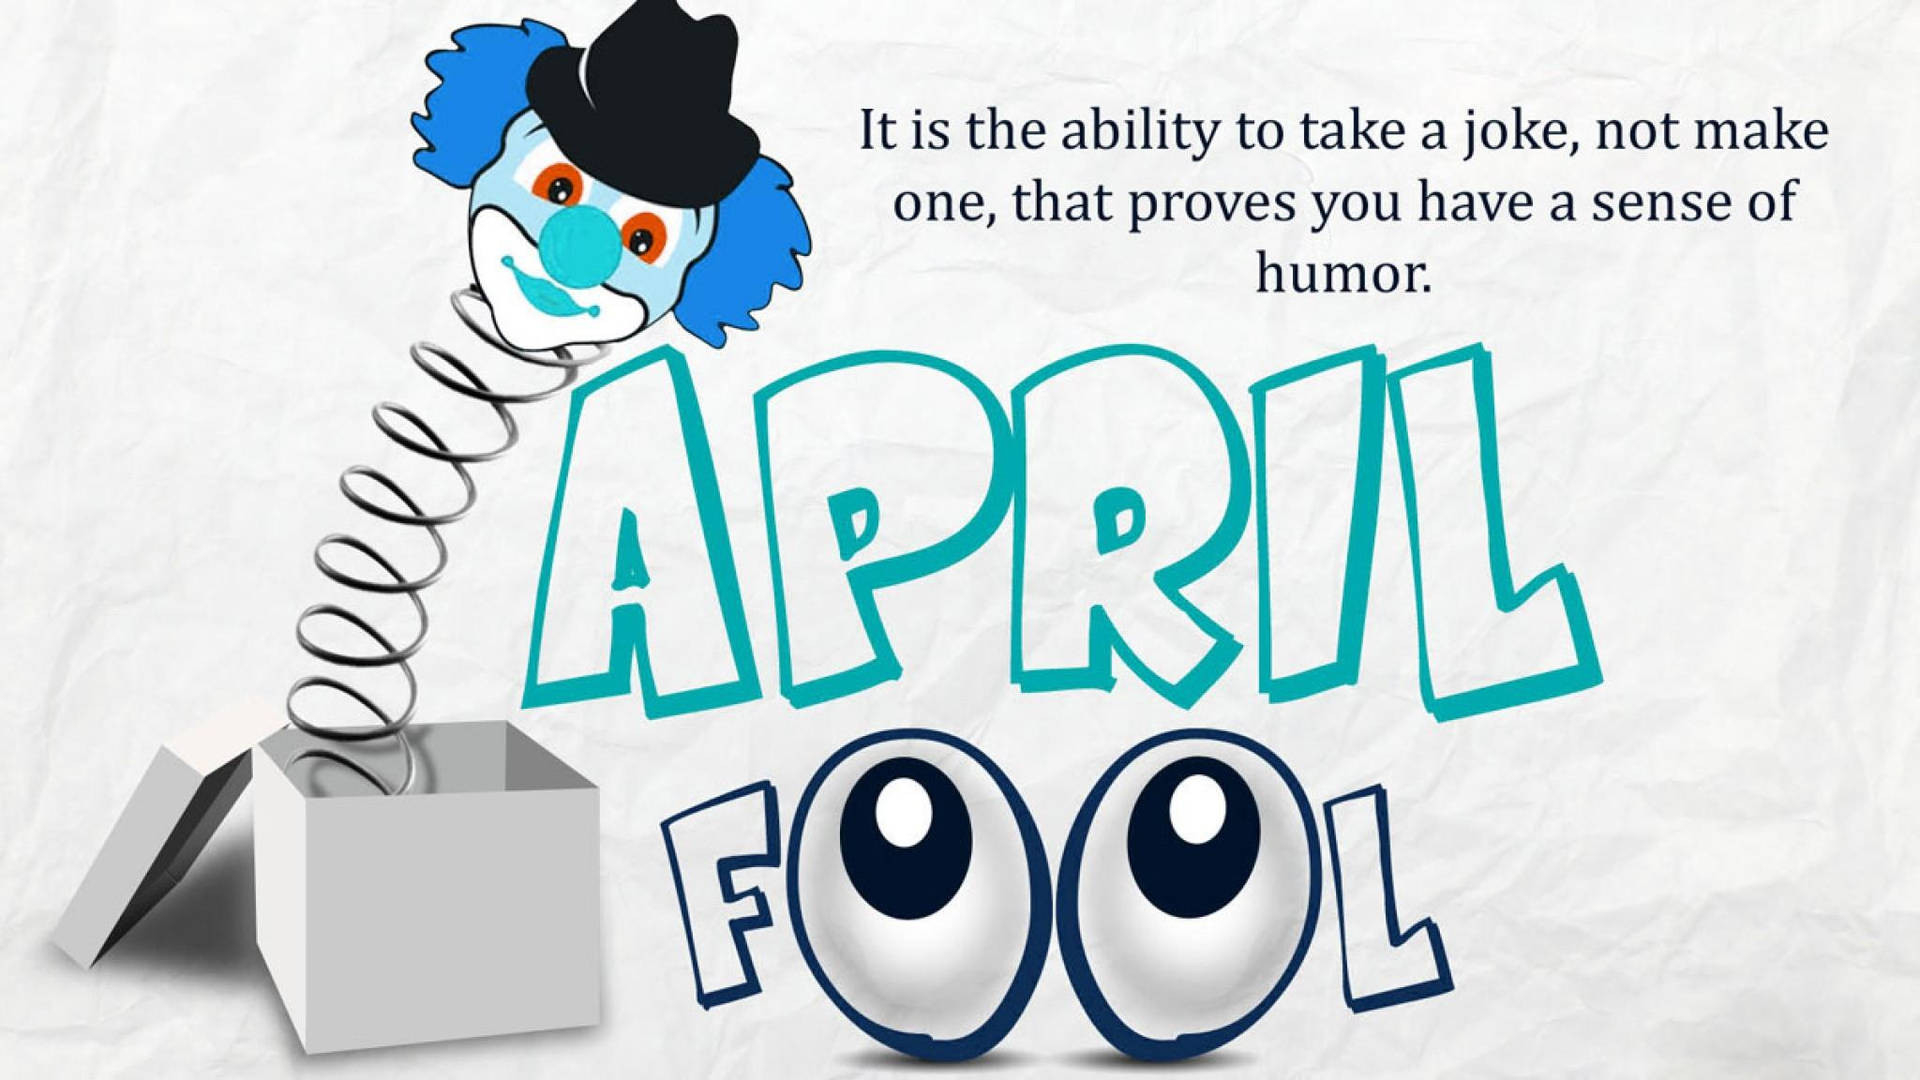 April Fools Day Pop Box Wallpaper